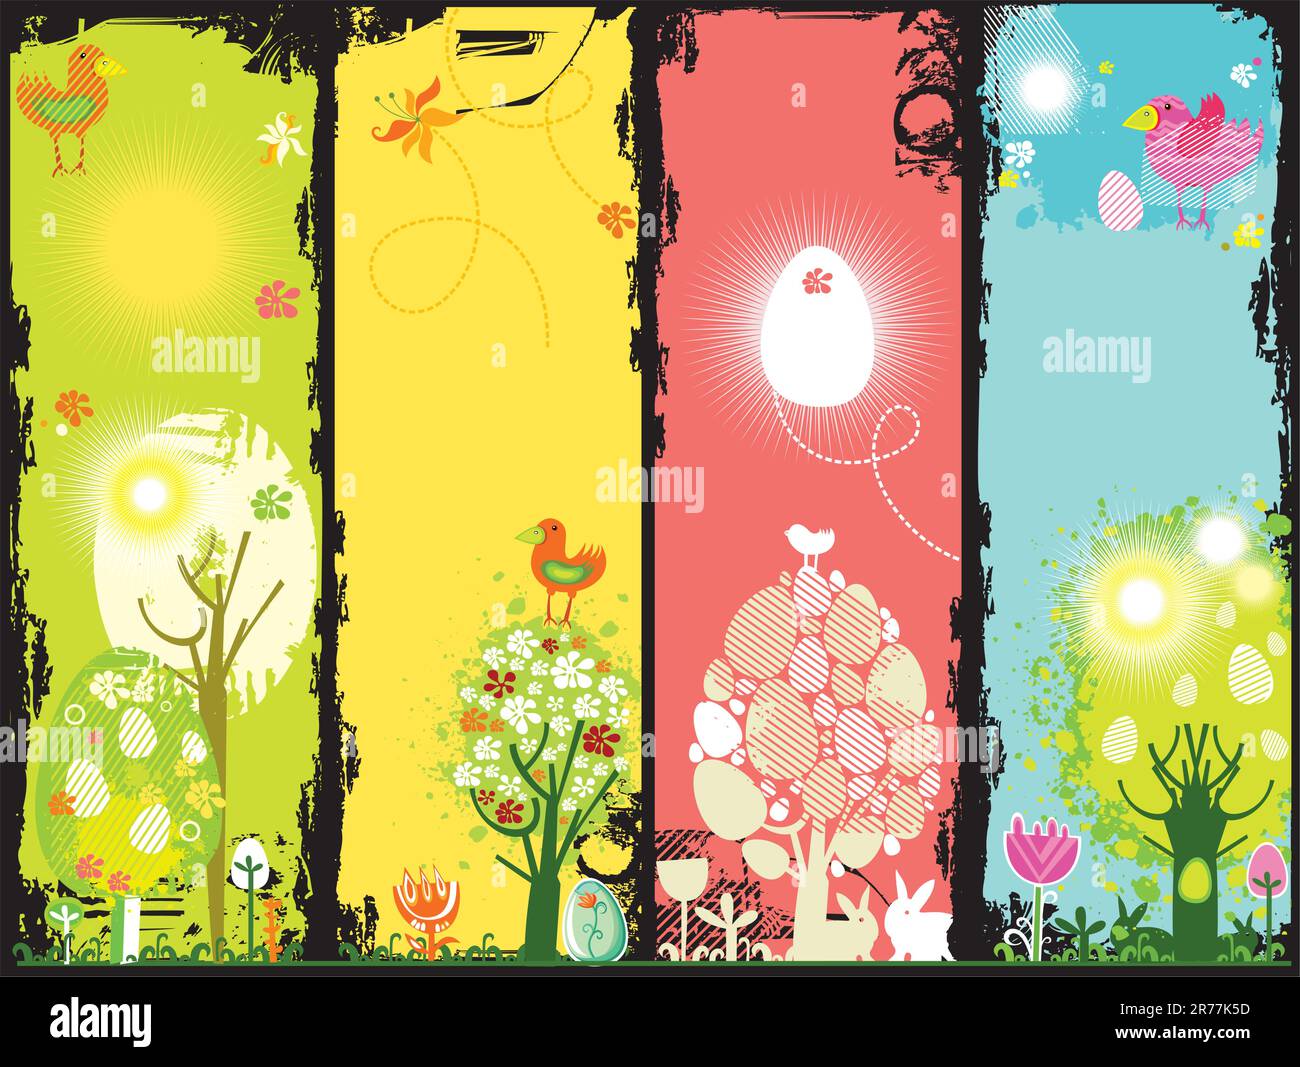 Banderoles colorées modernes Grunge Pâques avec éléments floraux comme des arbres, des plantes et des fleurs pour célébrer le printemps, les oiseaux et les lapins (lapin), l'est... Illustration de Vecteur